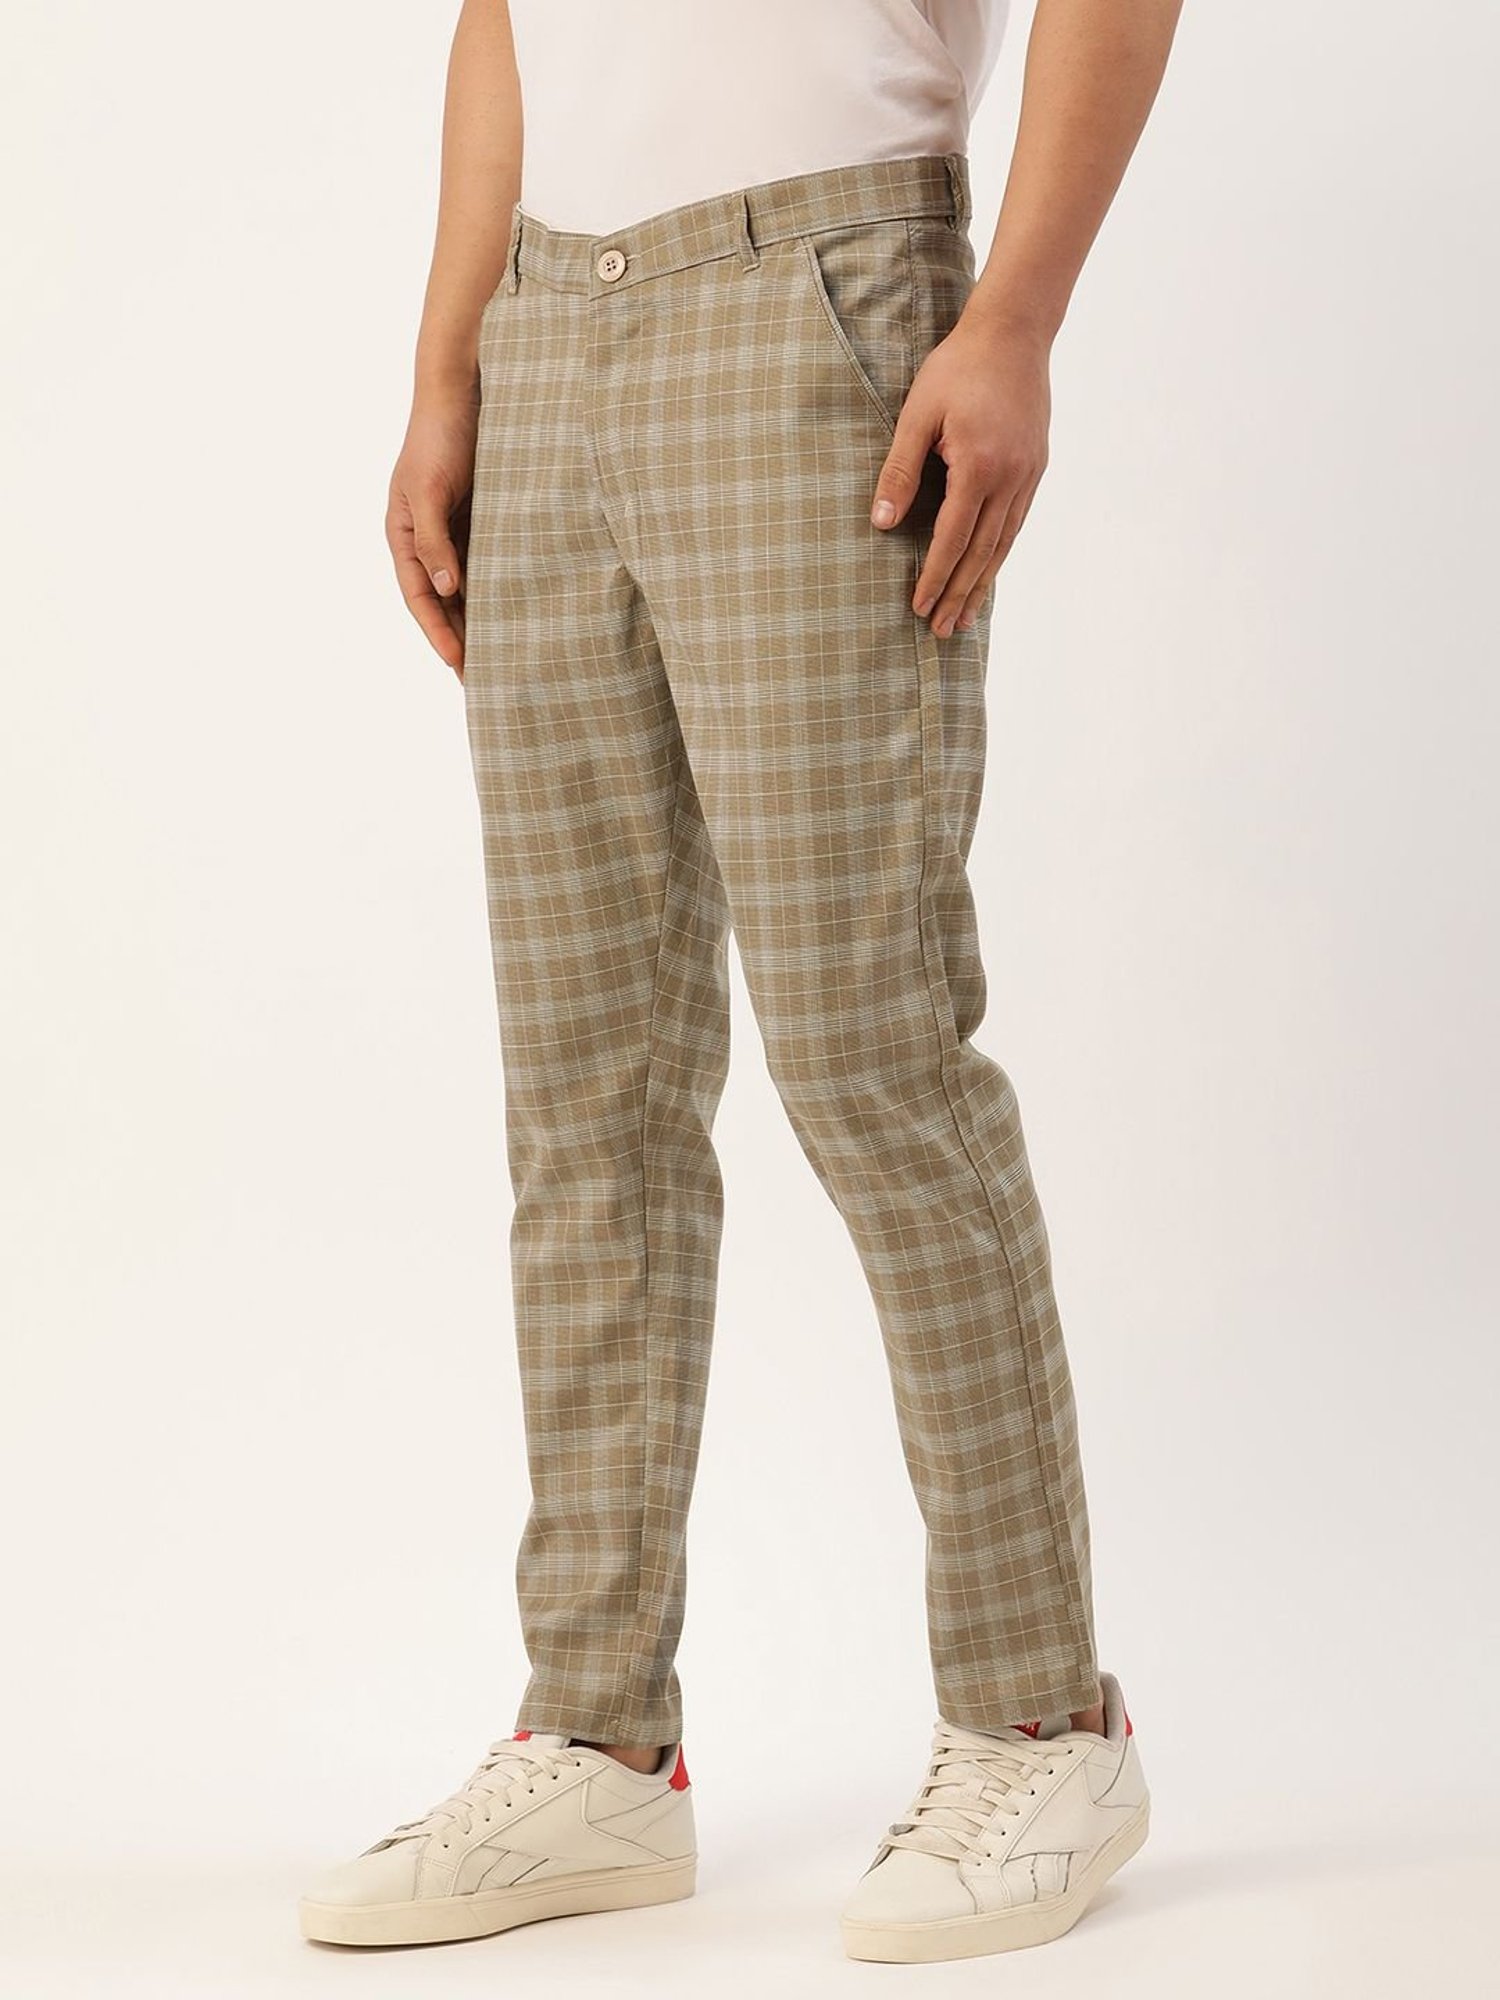 men's plaid pants outfit ideas | Plaid pants outfit, Mens plaid pants, Plaid  fashion